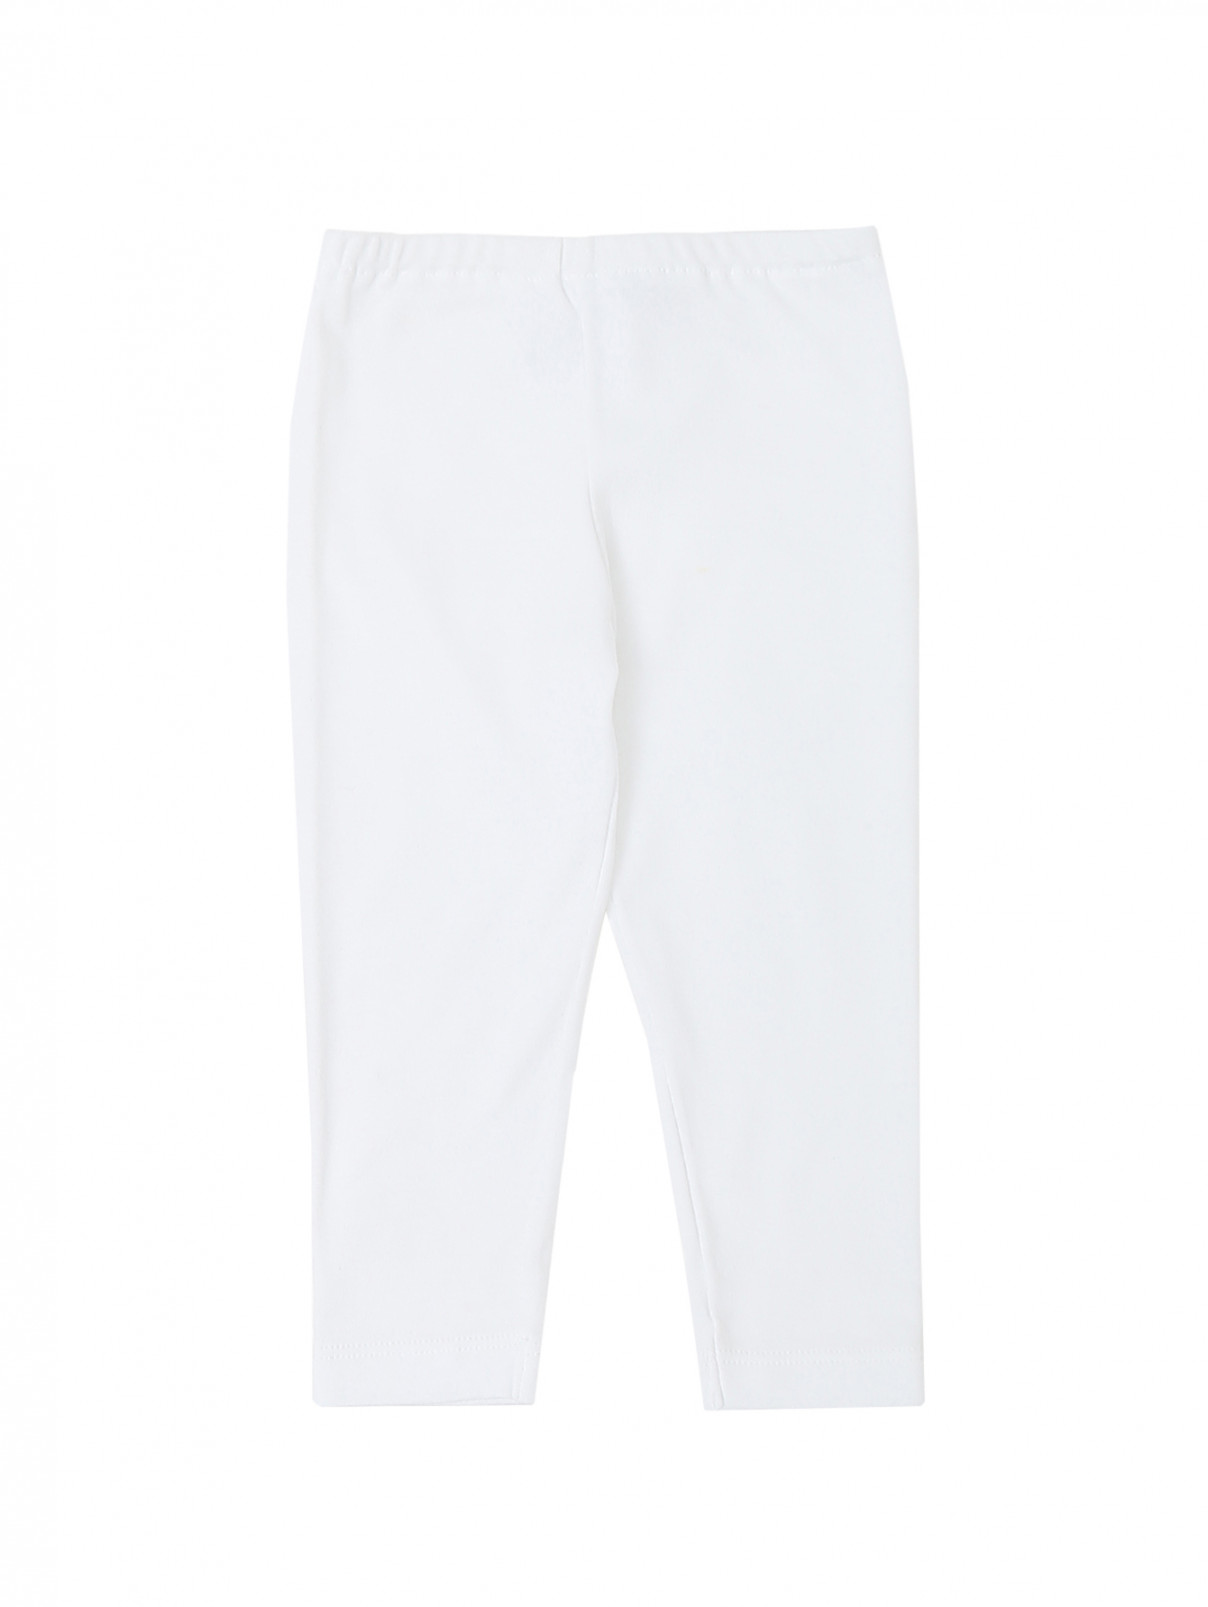 Трикотажные брюки из хлопка на резинке Aletta Couture  –  Общий вид  – Цвет:  Белый